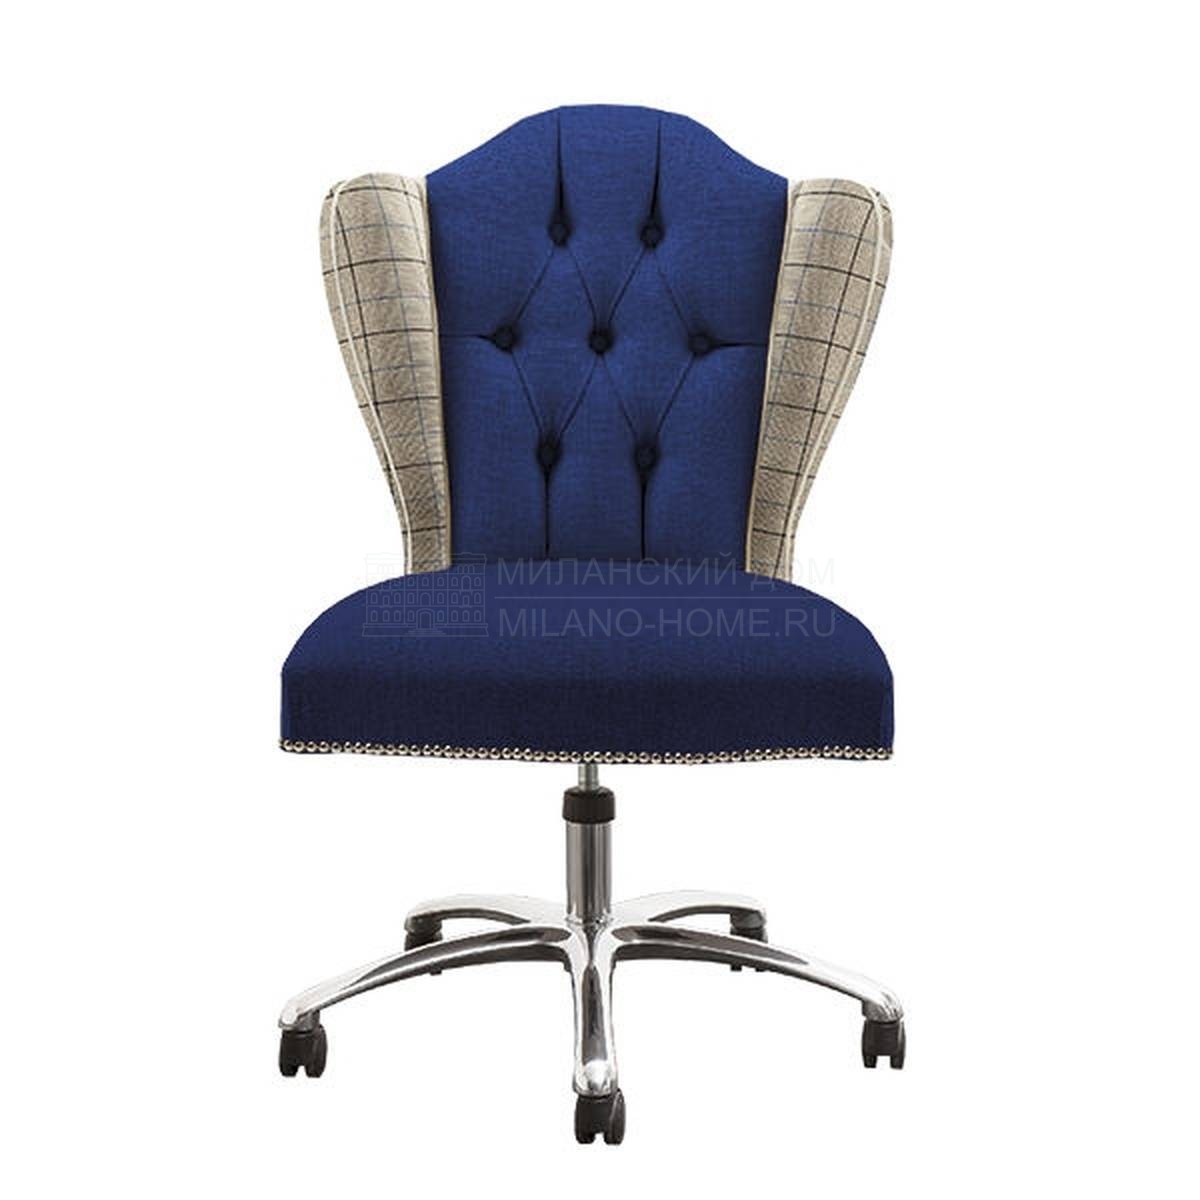 Рабочее кресло MN04C armchair из Италии фабрики LCI DECORA